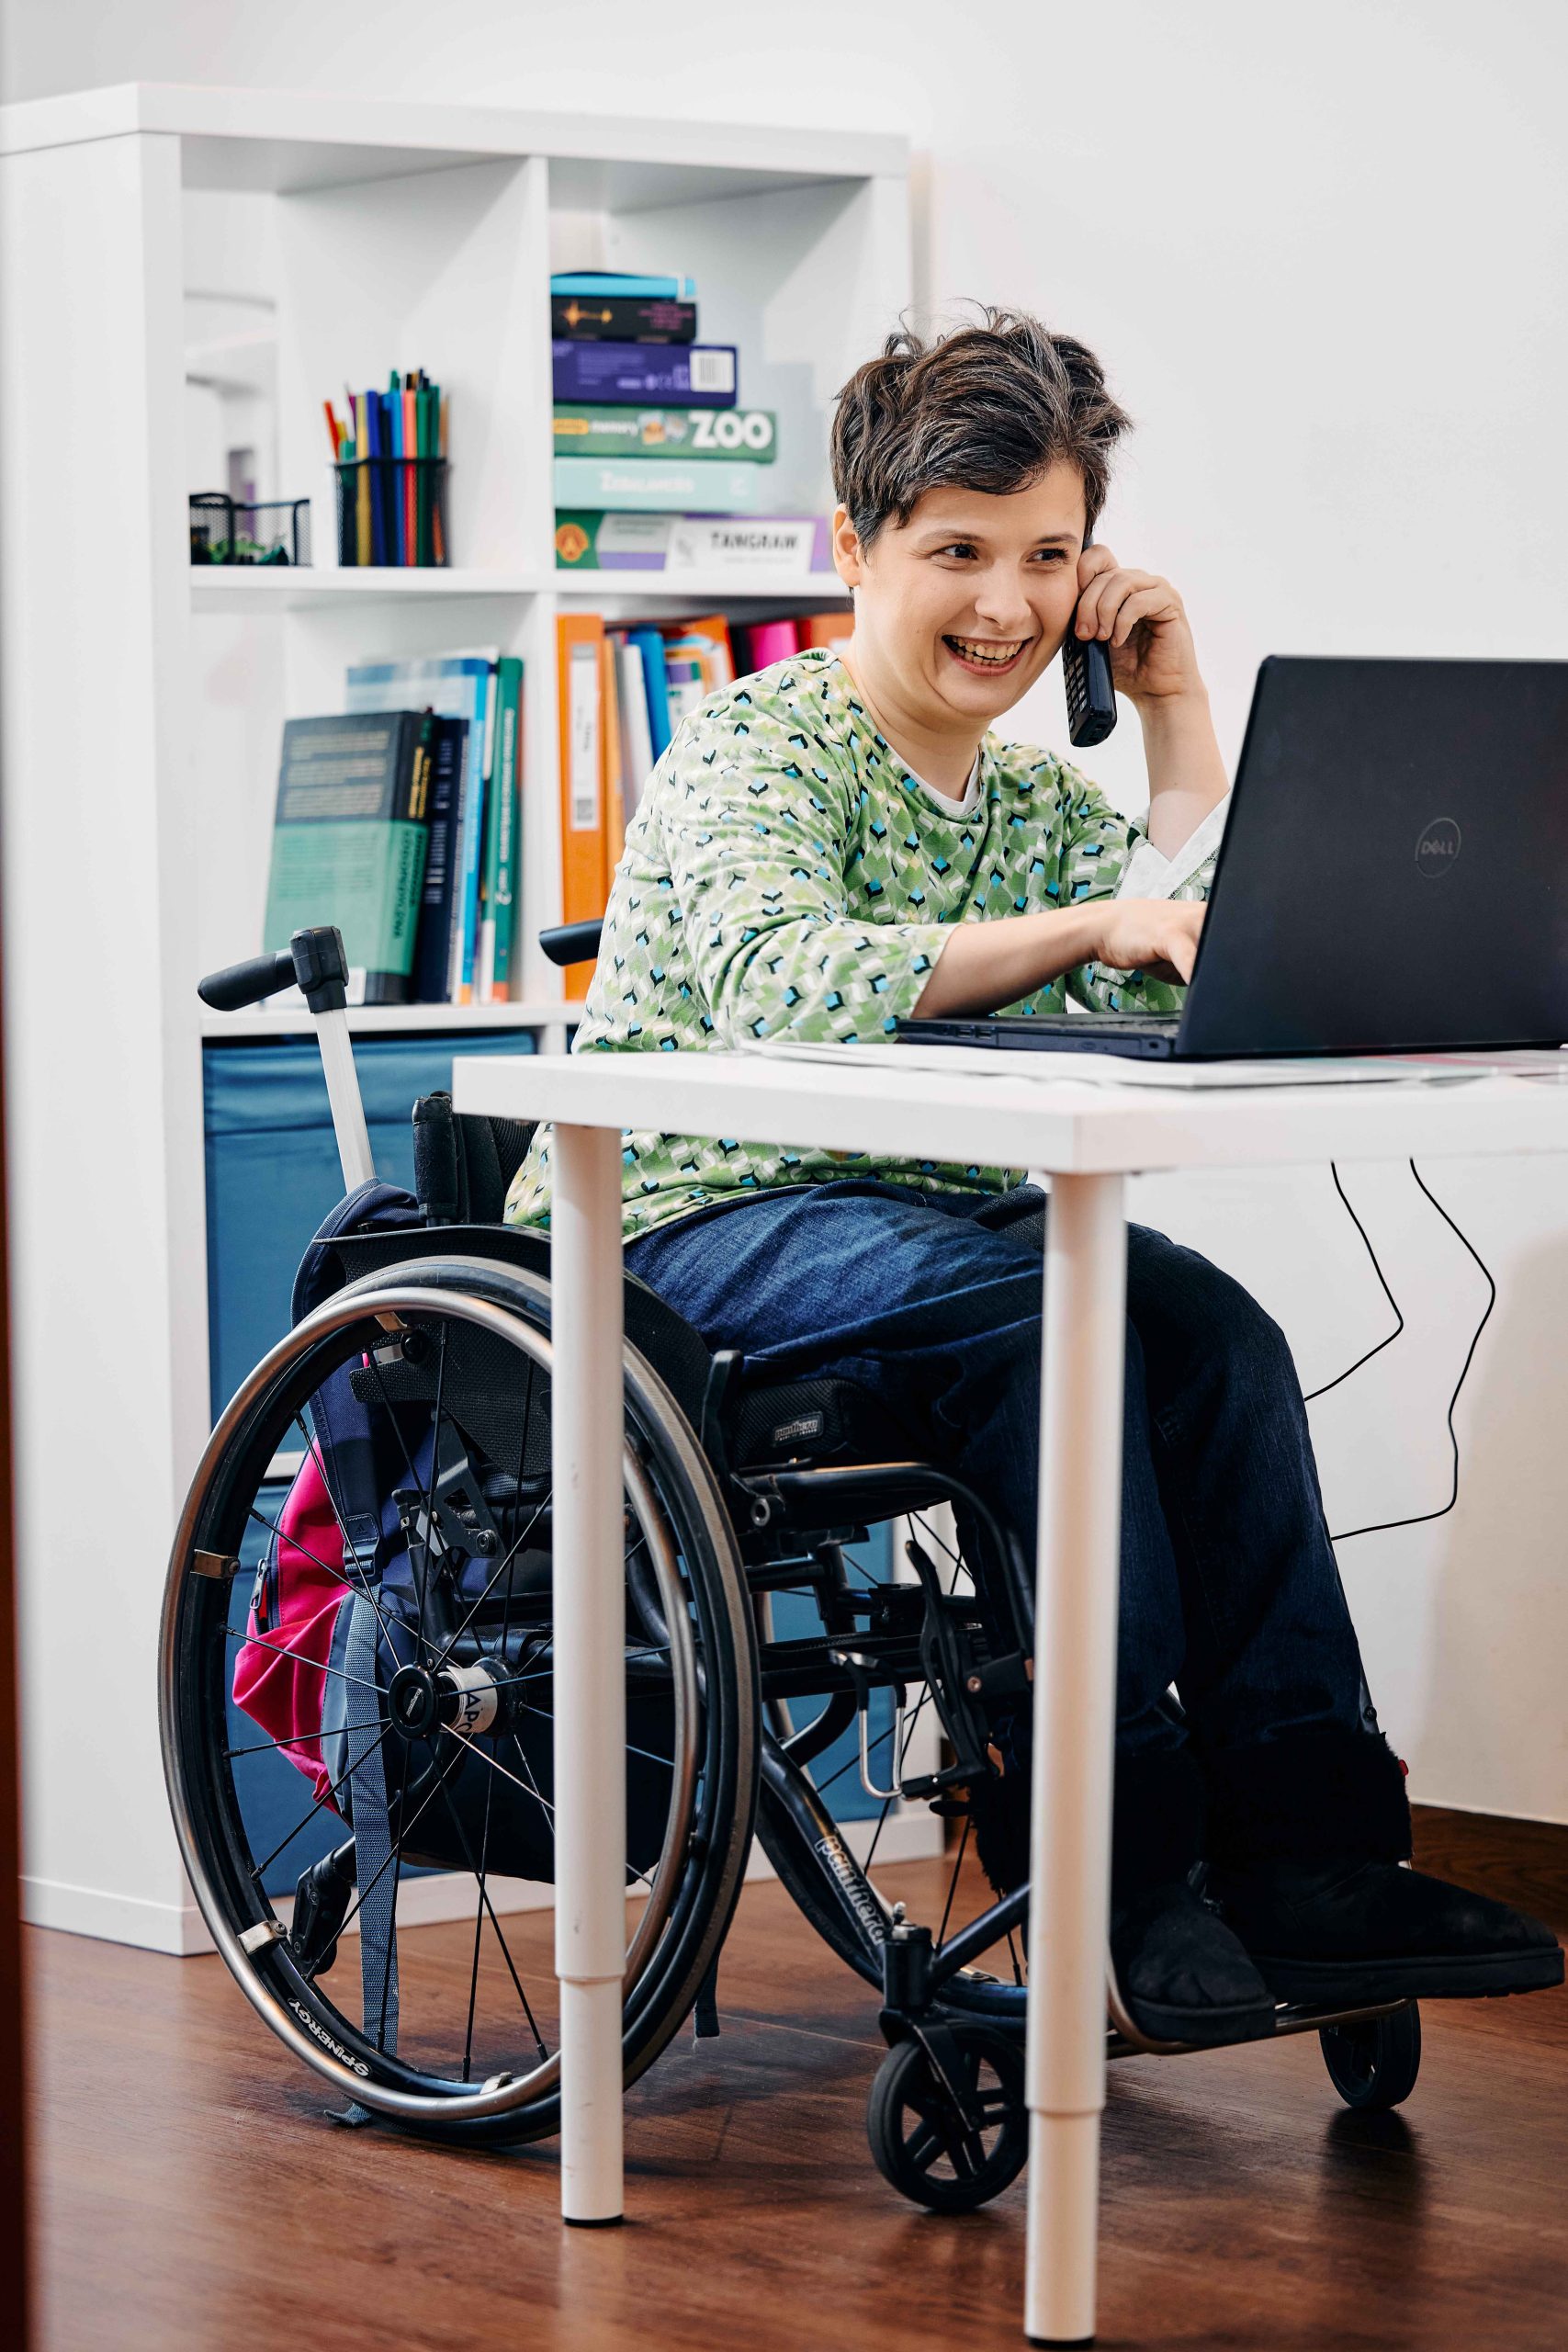 Uśmiechnięta kobieta na wózku siedzi przy komputerze i rozmawia przez telefon